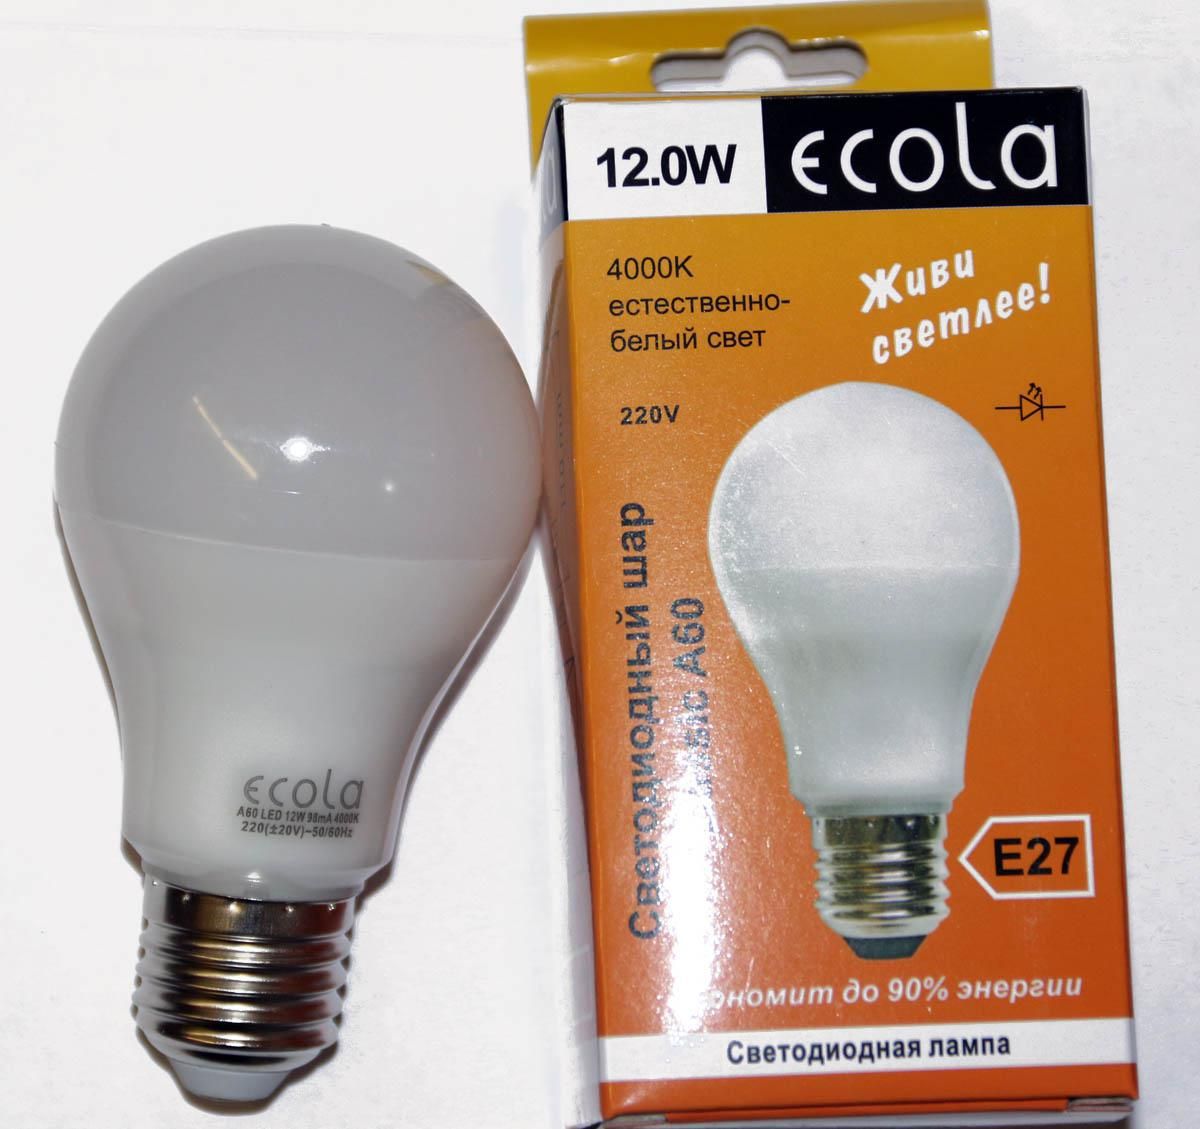 Отзыв про Светодиодная лампа Ecola classic LED 12,0 W A60 220 - 240V .